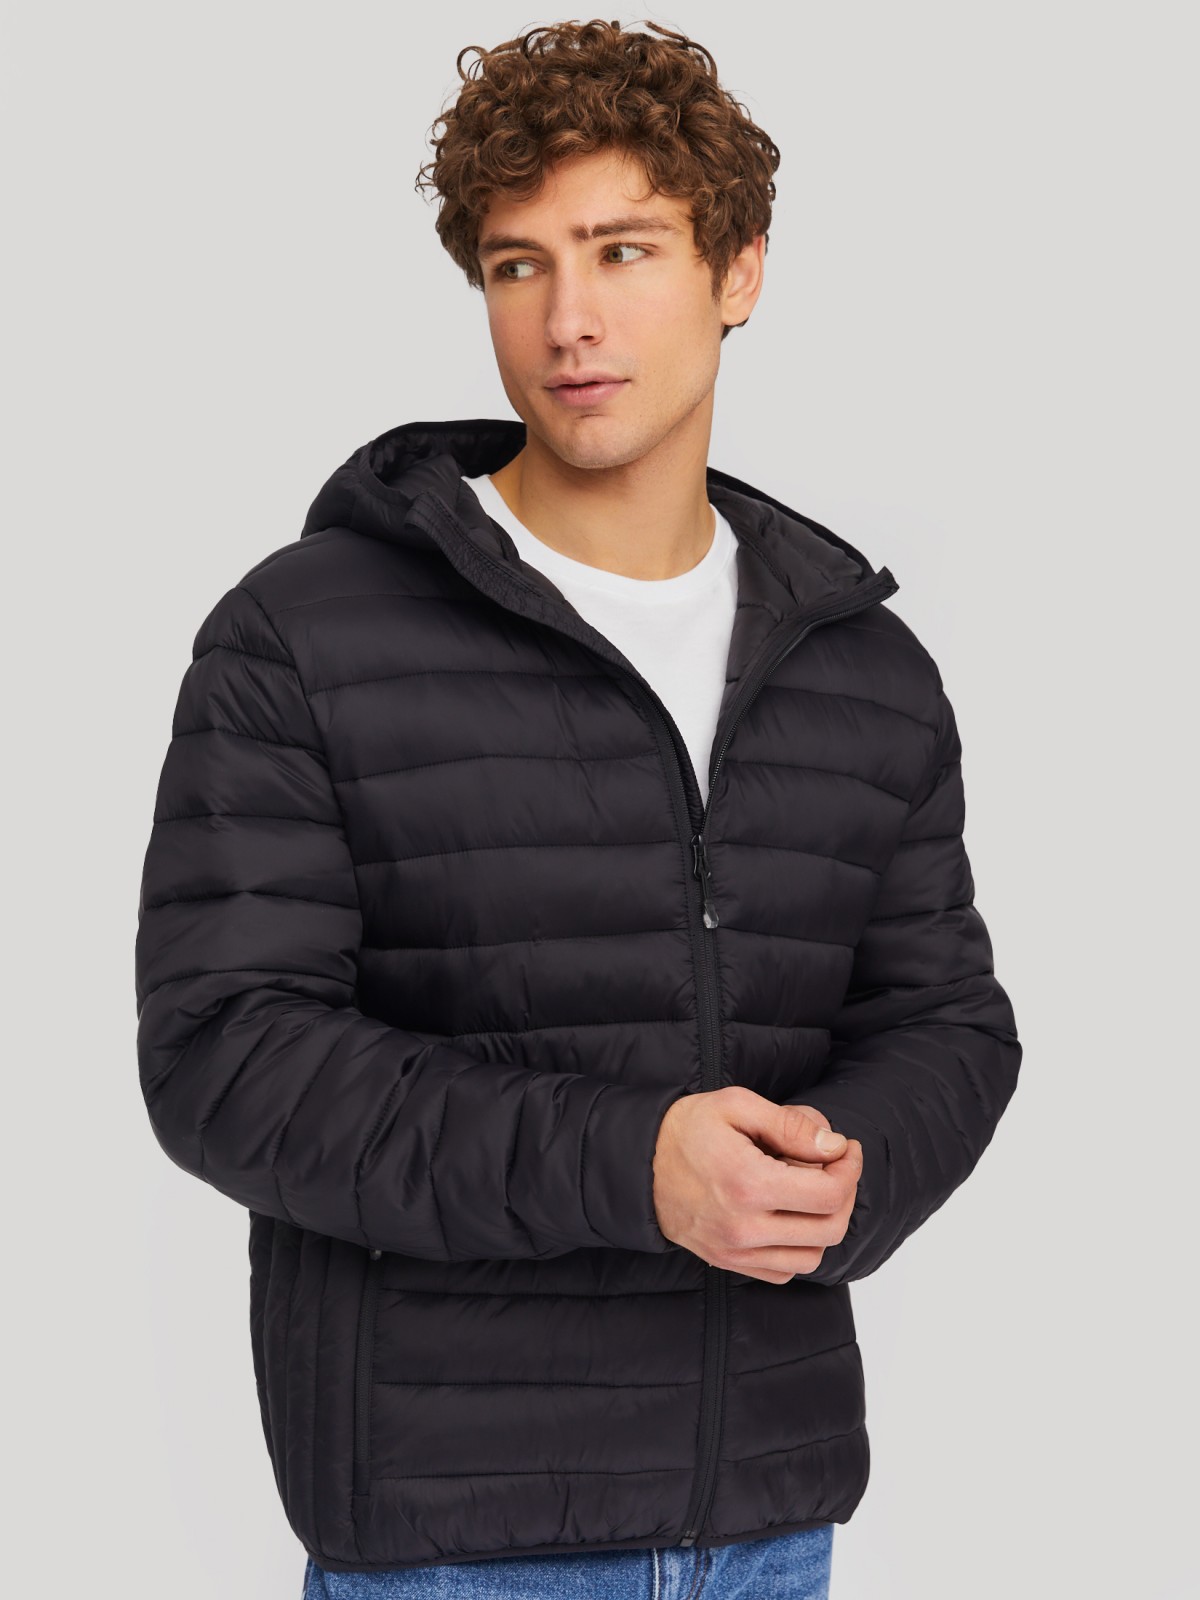 Лёгкая утеплённая стёганая куртка на молнии с капюшоном zolla 01412512N074, цвет черный, размер S - фото 3